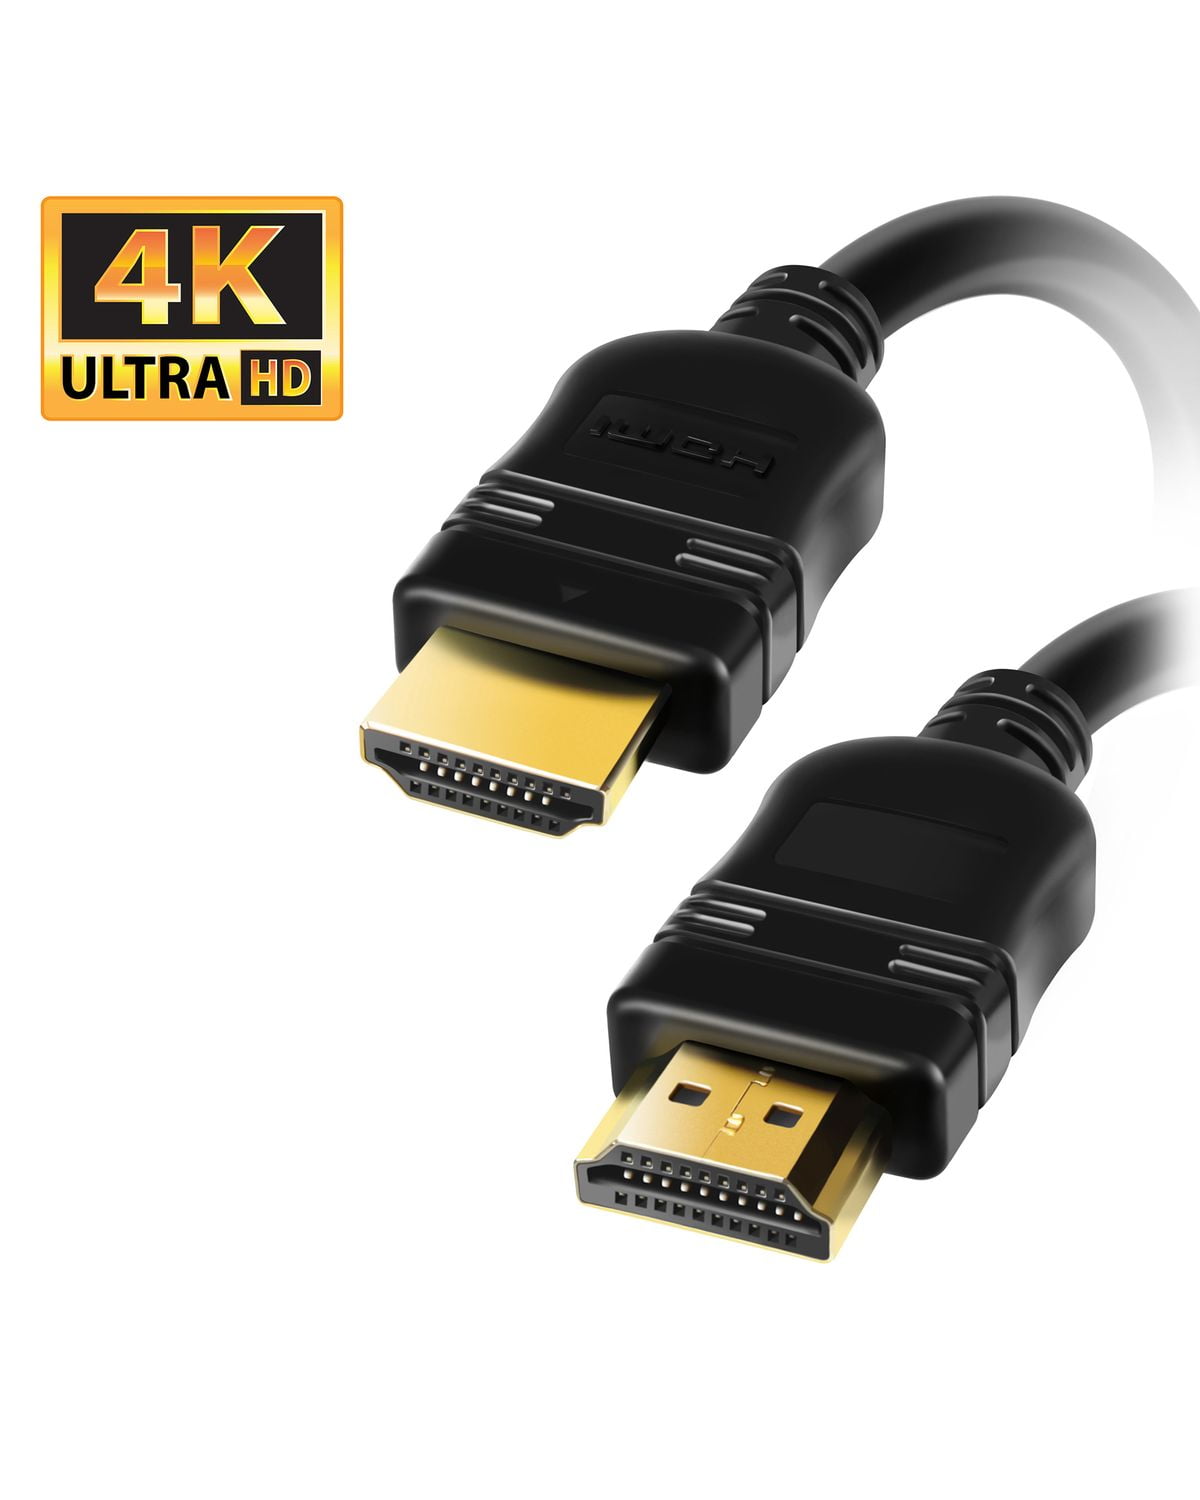 Ethernet FULL HD 1080p 3D TV LCD 4K 5m HDMI Kabel 1.4 a HighSpeed 3D Highend m